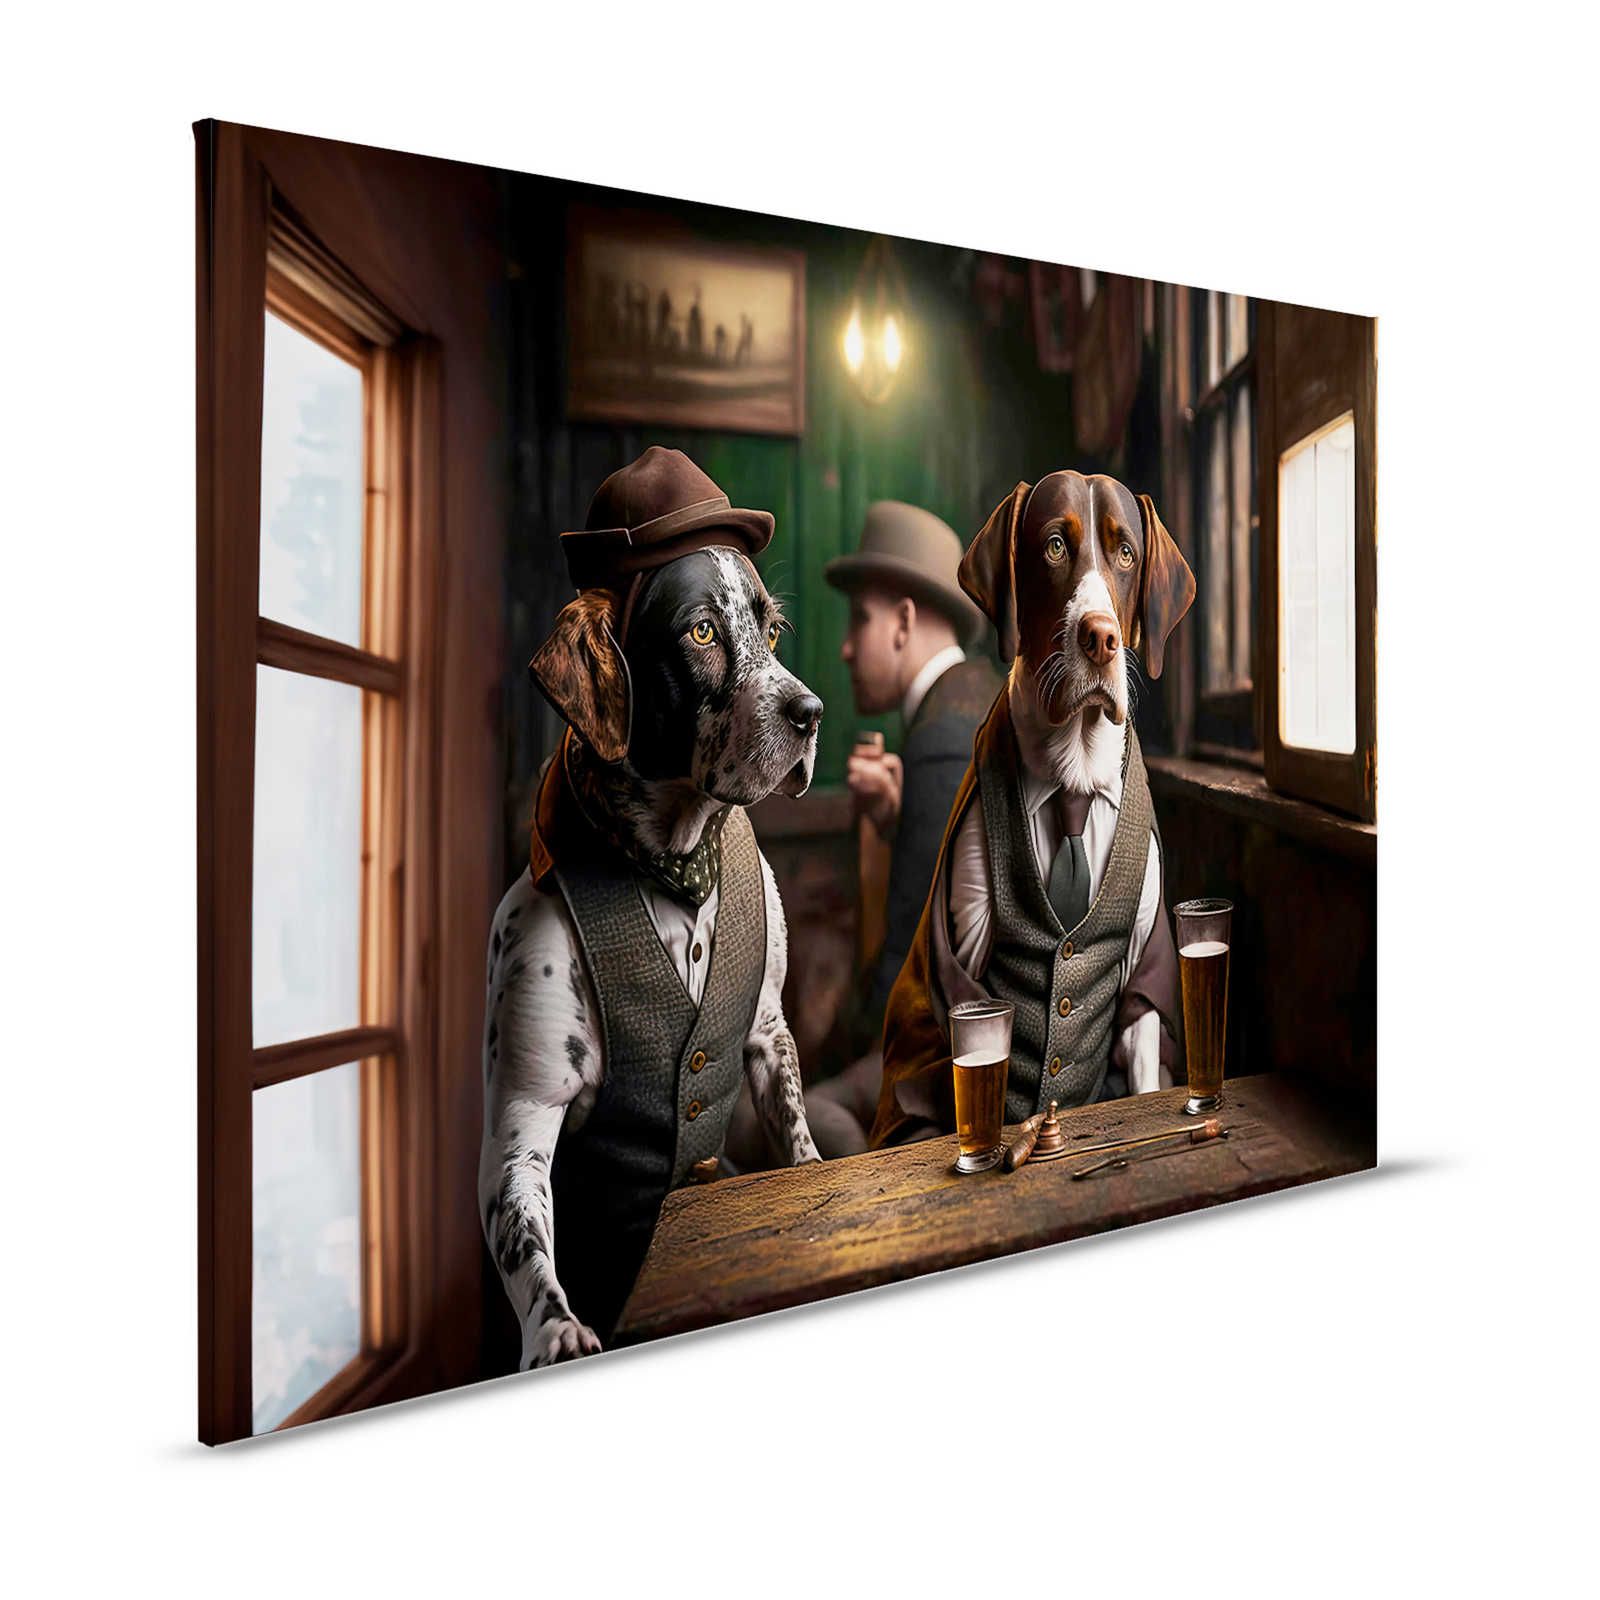 KI Canvas schilderij »Doggy Bar« - 120 cm x 80 cm
